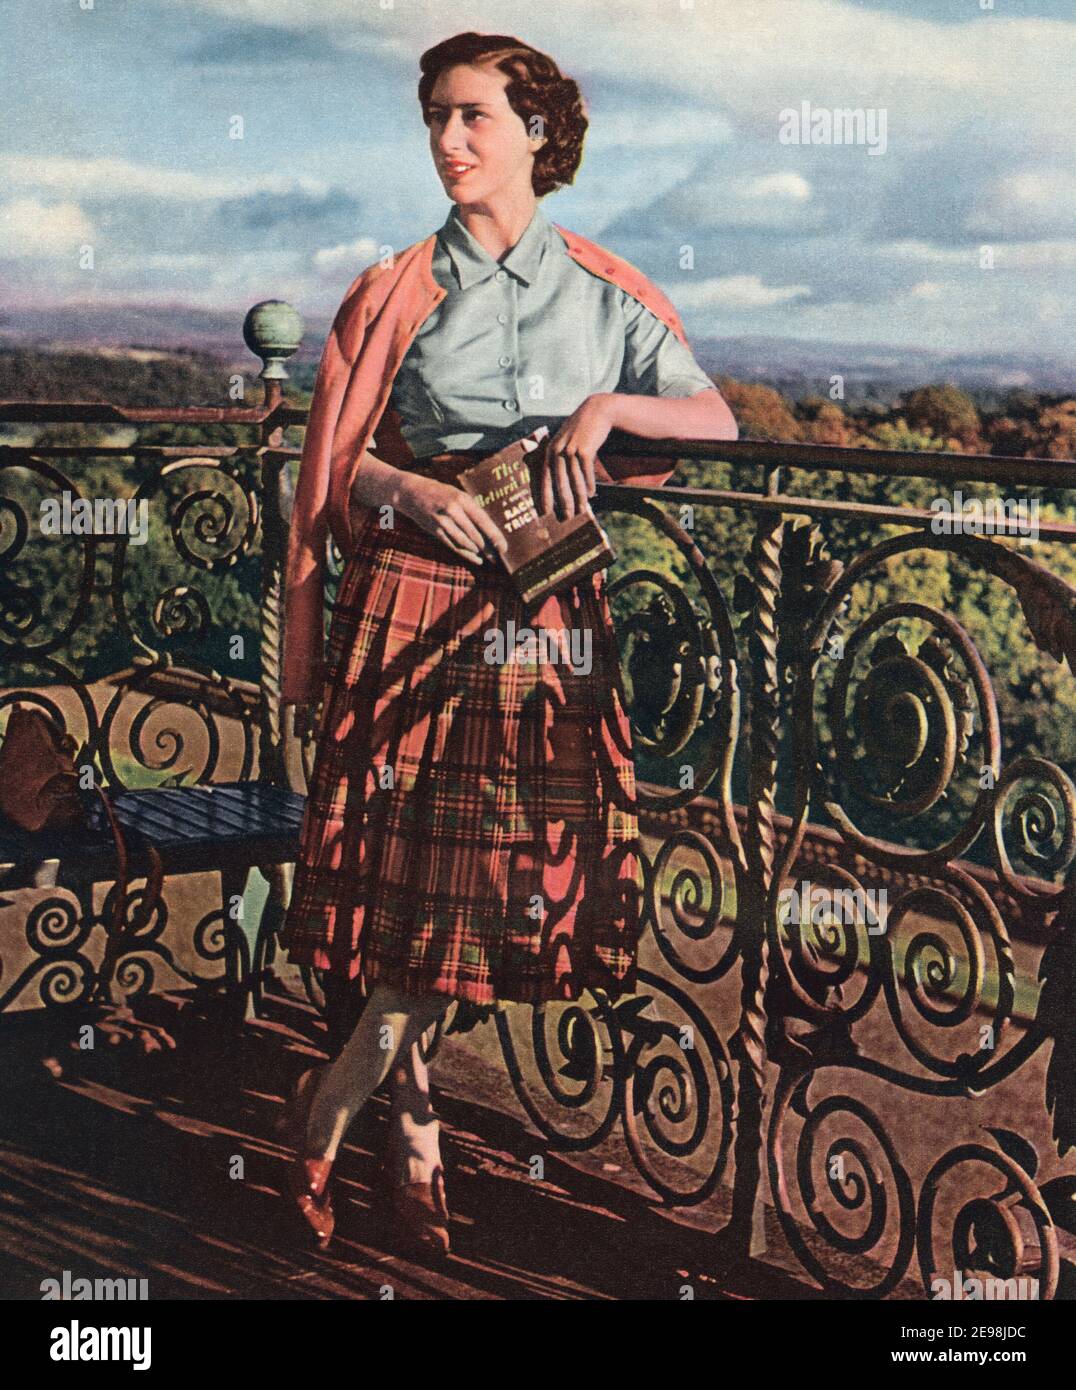 EDITORIAL ONLY Princess Margaret, Margaret Rose, 1930–2002, auch bekannt als Prinzessin Margaret Rose. Die zukünftige Gräfin von Snowdon. Jüngere Tochter von König Georg VI. Und Königin Elisabeth. Aus dem Queen Elizabeth Coronation Book, veröffentlicht 1953. Stockfoto